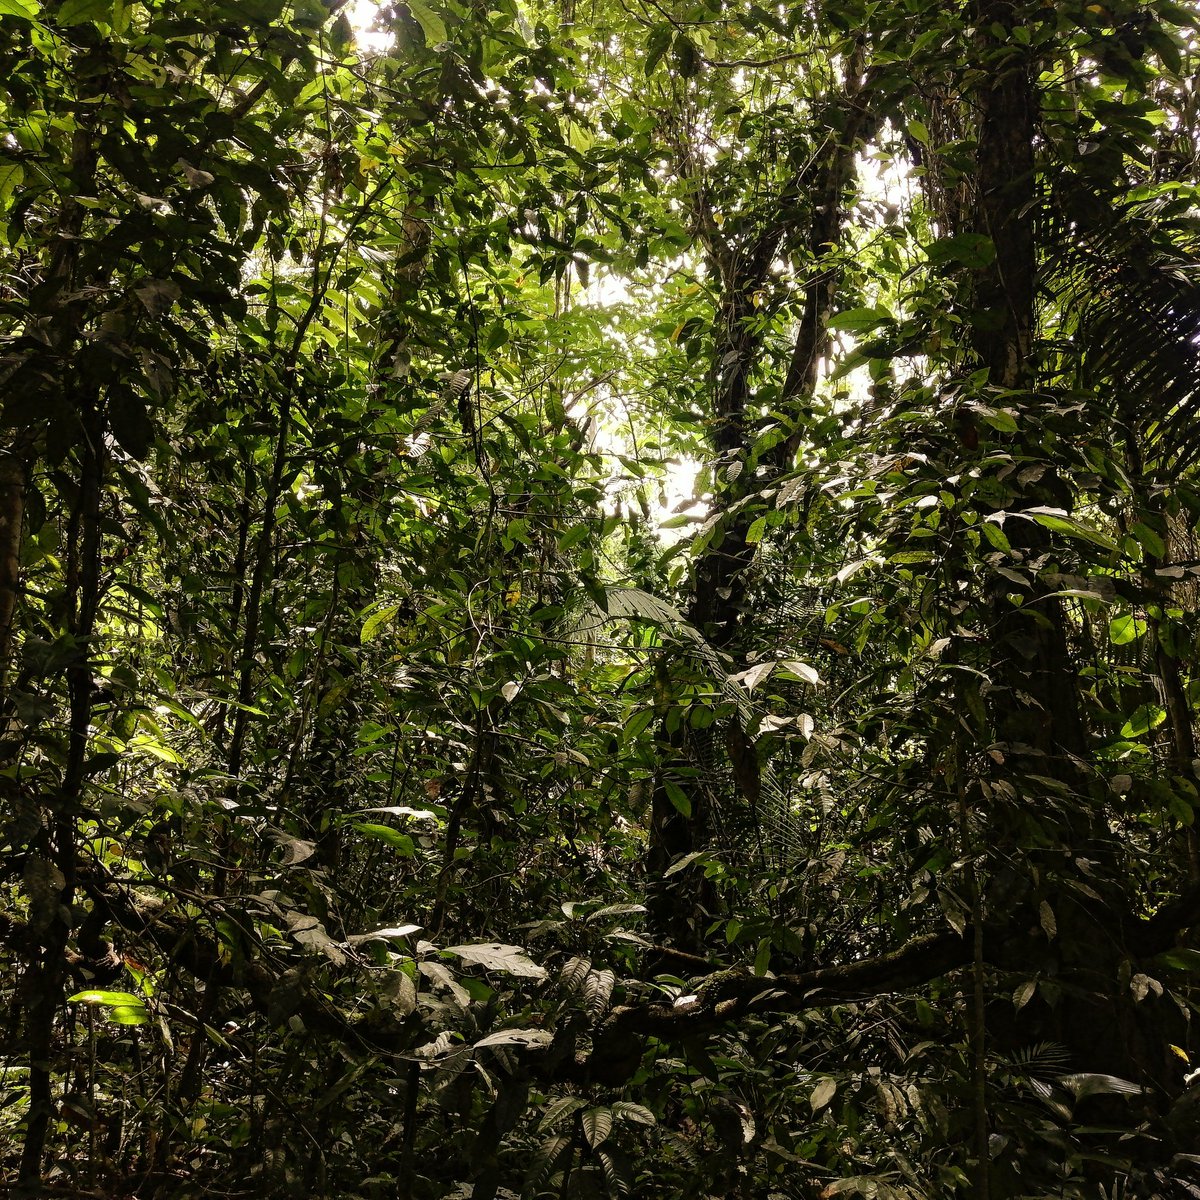 Los bosques secundarios son bosques en recuperación altamente frágiles ante el cambio de uso de suelo. Este #diadelatierra🌎 lamentamos el acelerado cambio de uso de suelo qué fragmenta los ecosistemas y nos hace más vulnerable ante el cambio climático #nohayplanetab⚠️